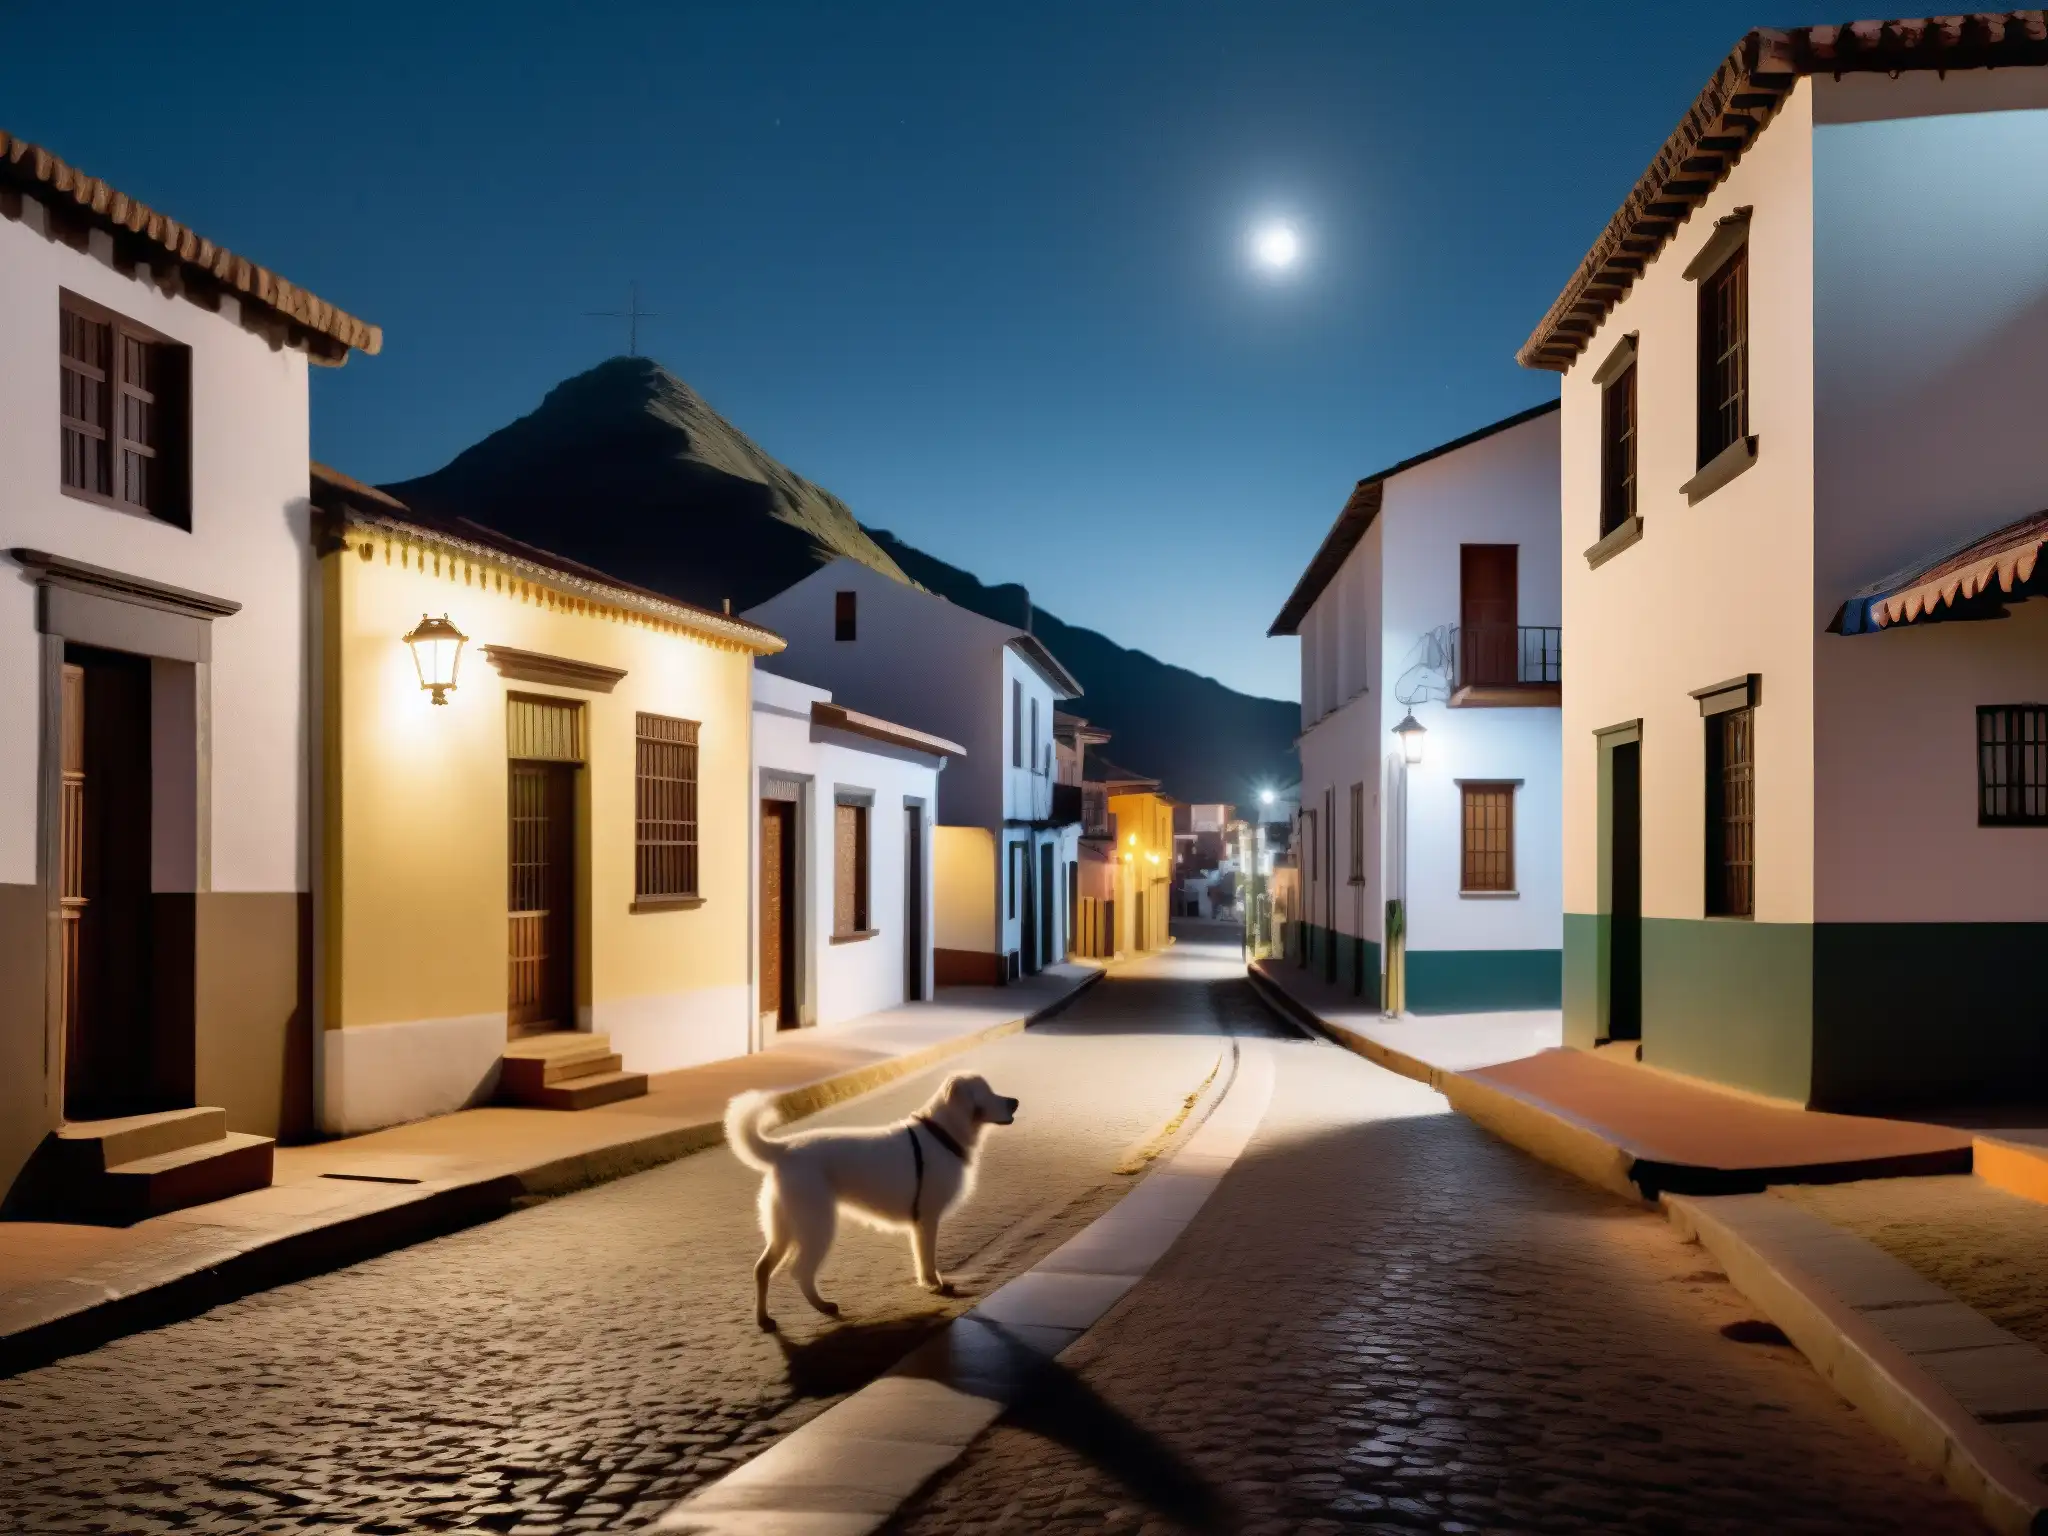 Una calle iluminada por la luna en un pueblo sudamericano, con una figura sombría paseando un perro blanco fantasmal